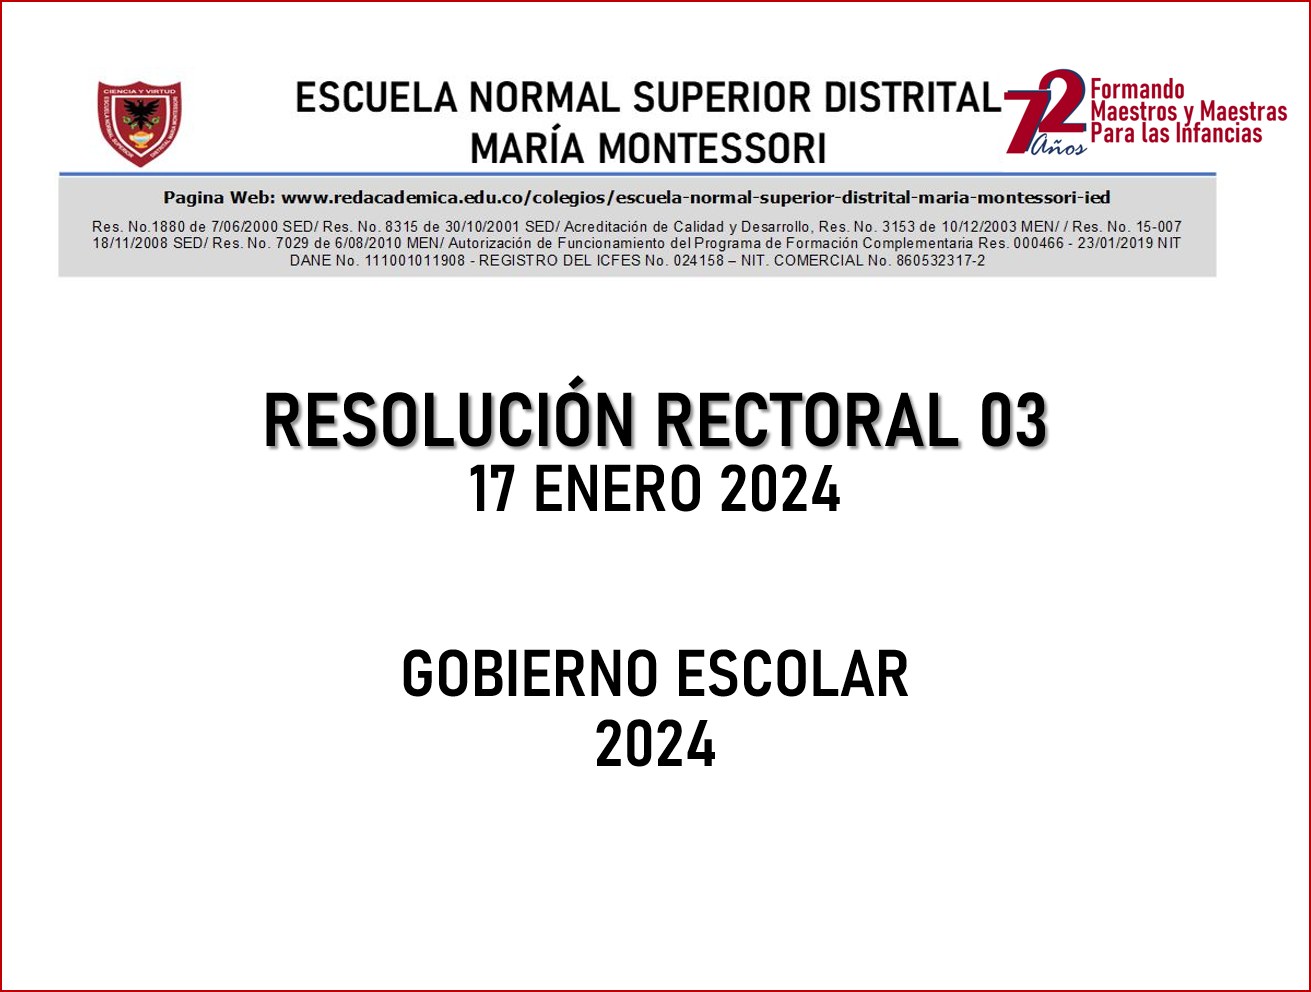 RESOLUCIÓN RECTORAL No. 03